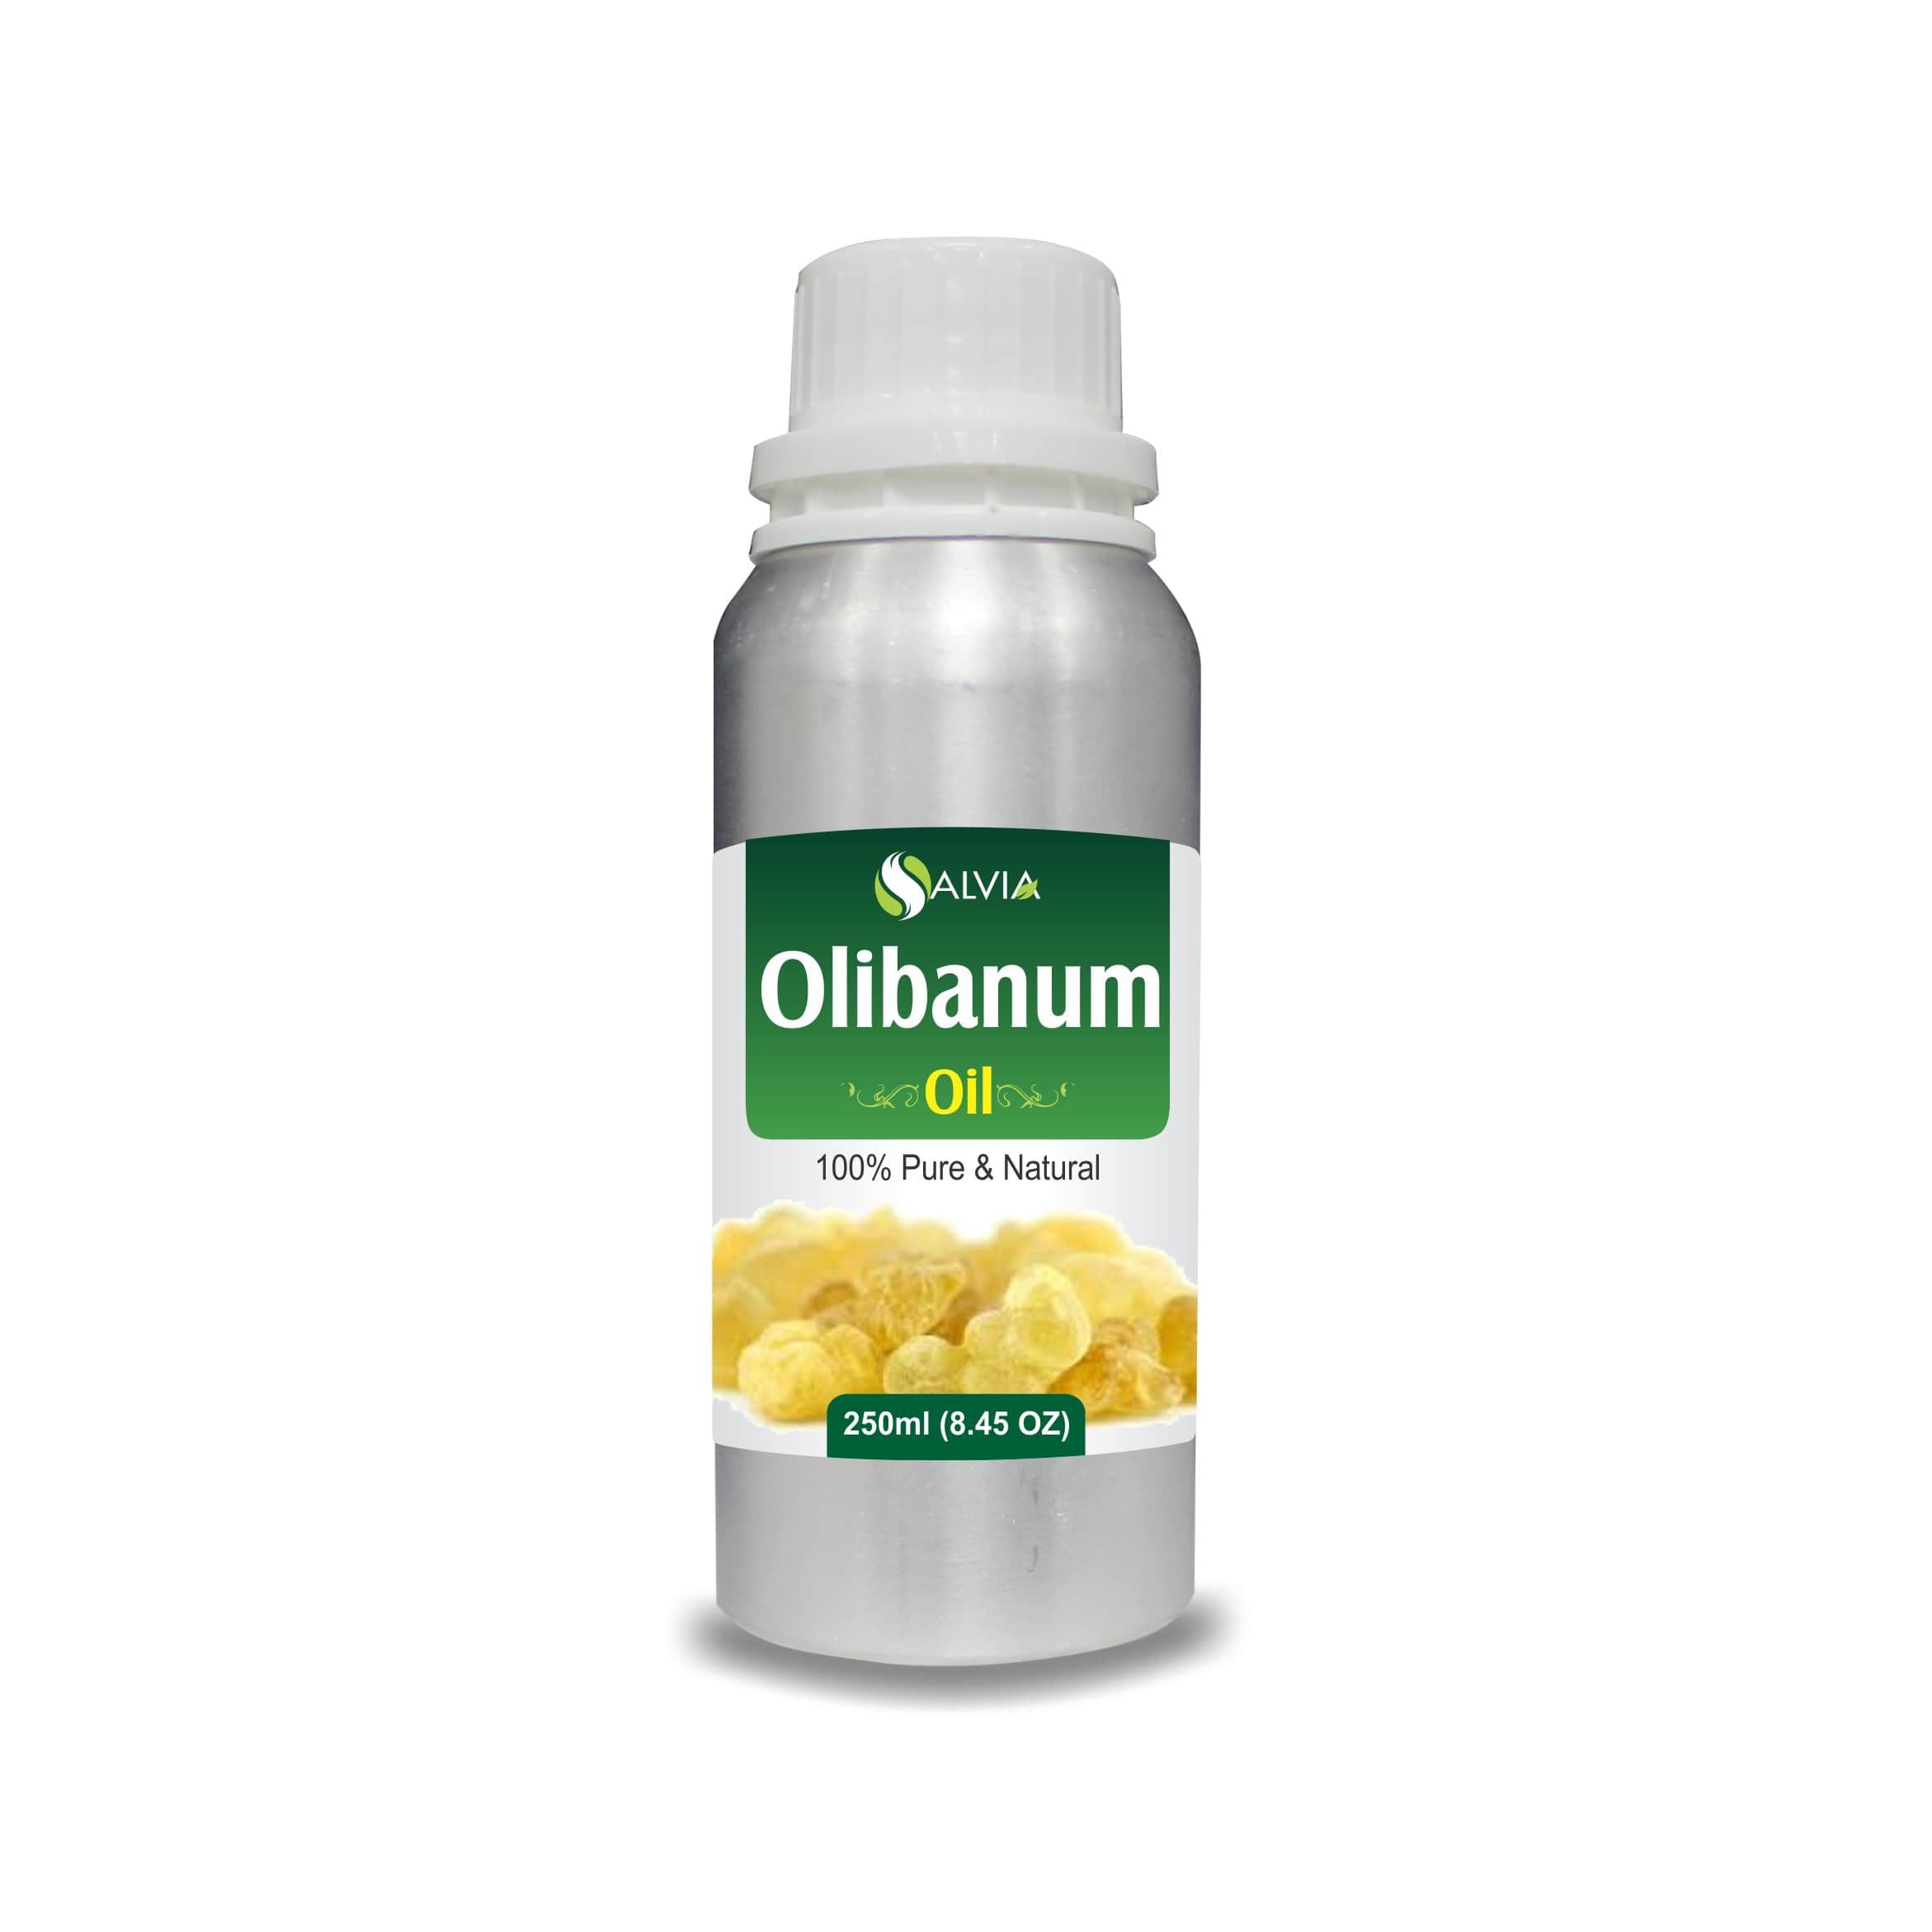 olibanum oil for skin